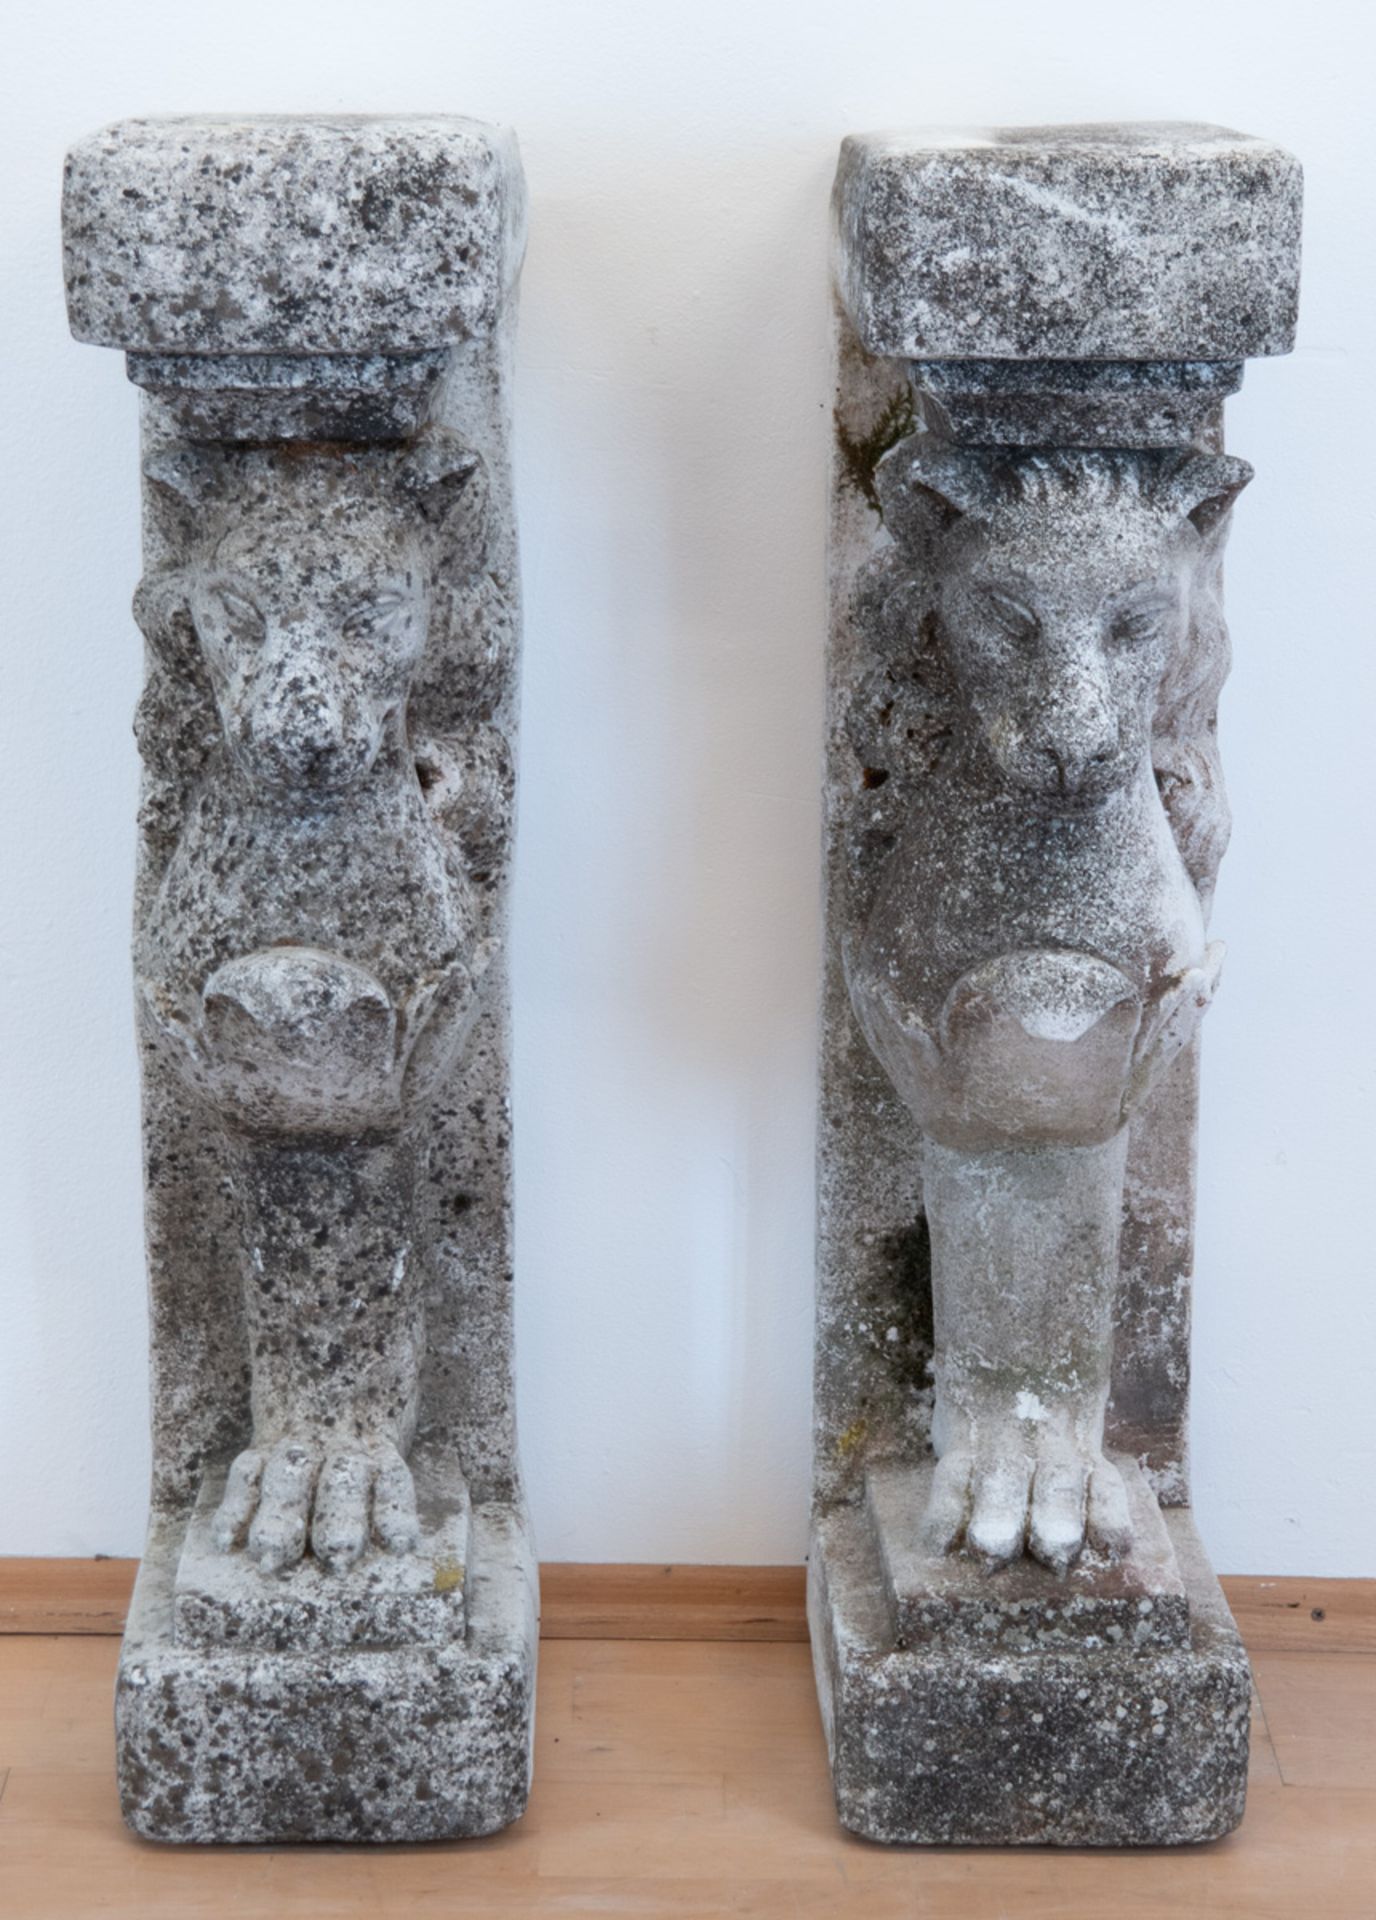 Paar Türwächter "Löwen", 20er Jahre, aufrecht stehende Sandsteinelemente, 90x22x30 cm